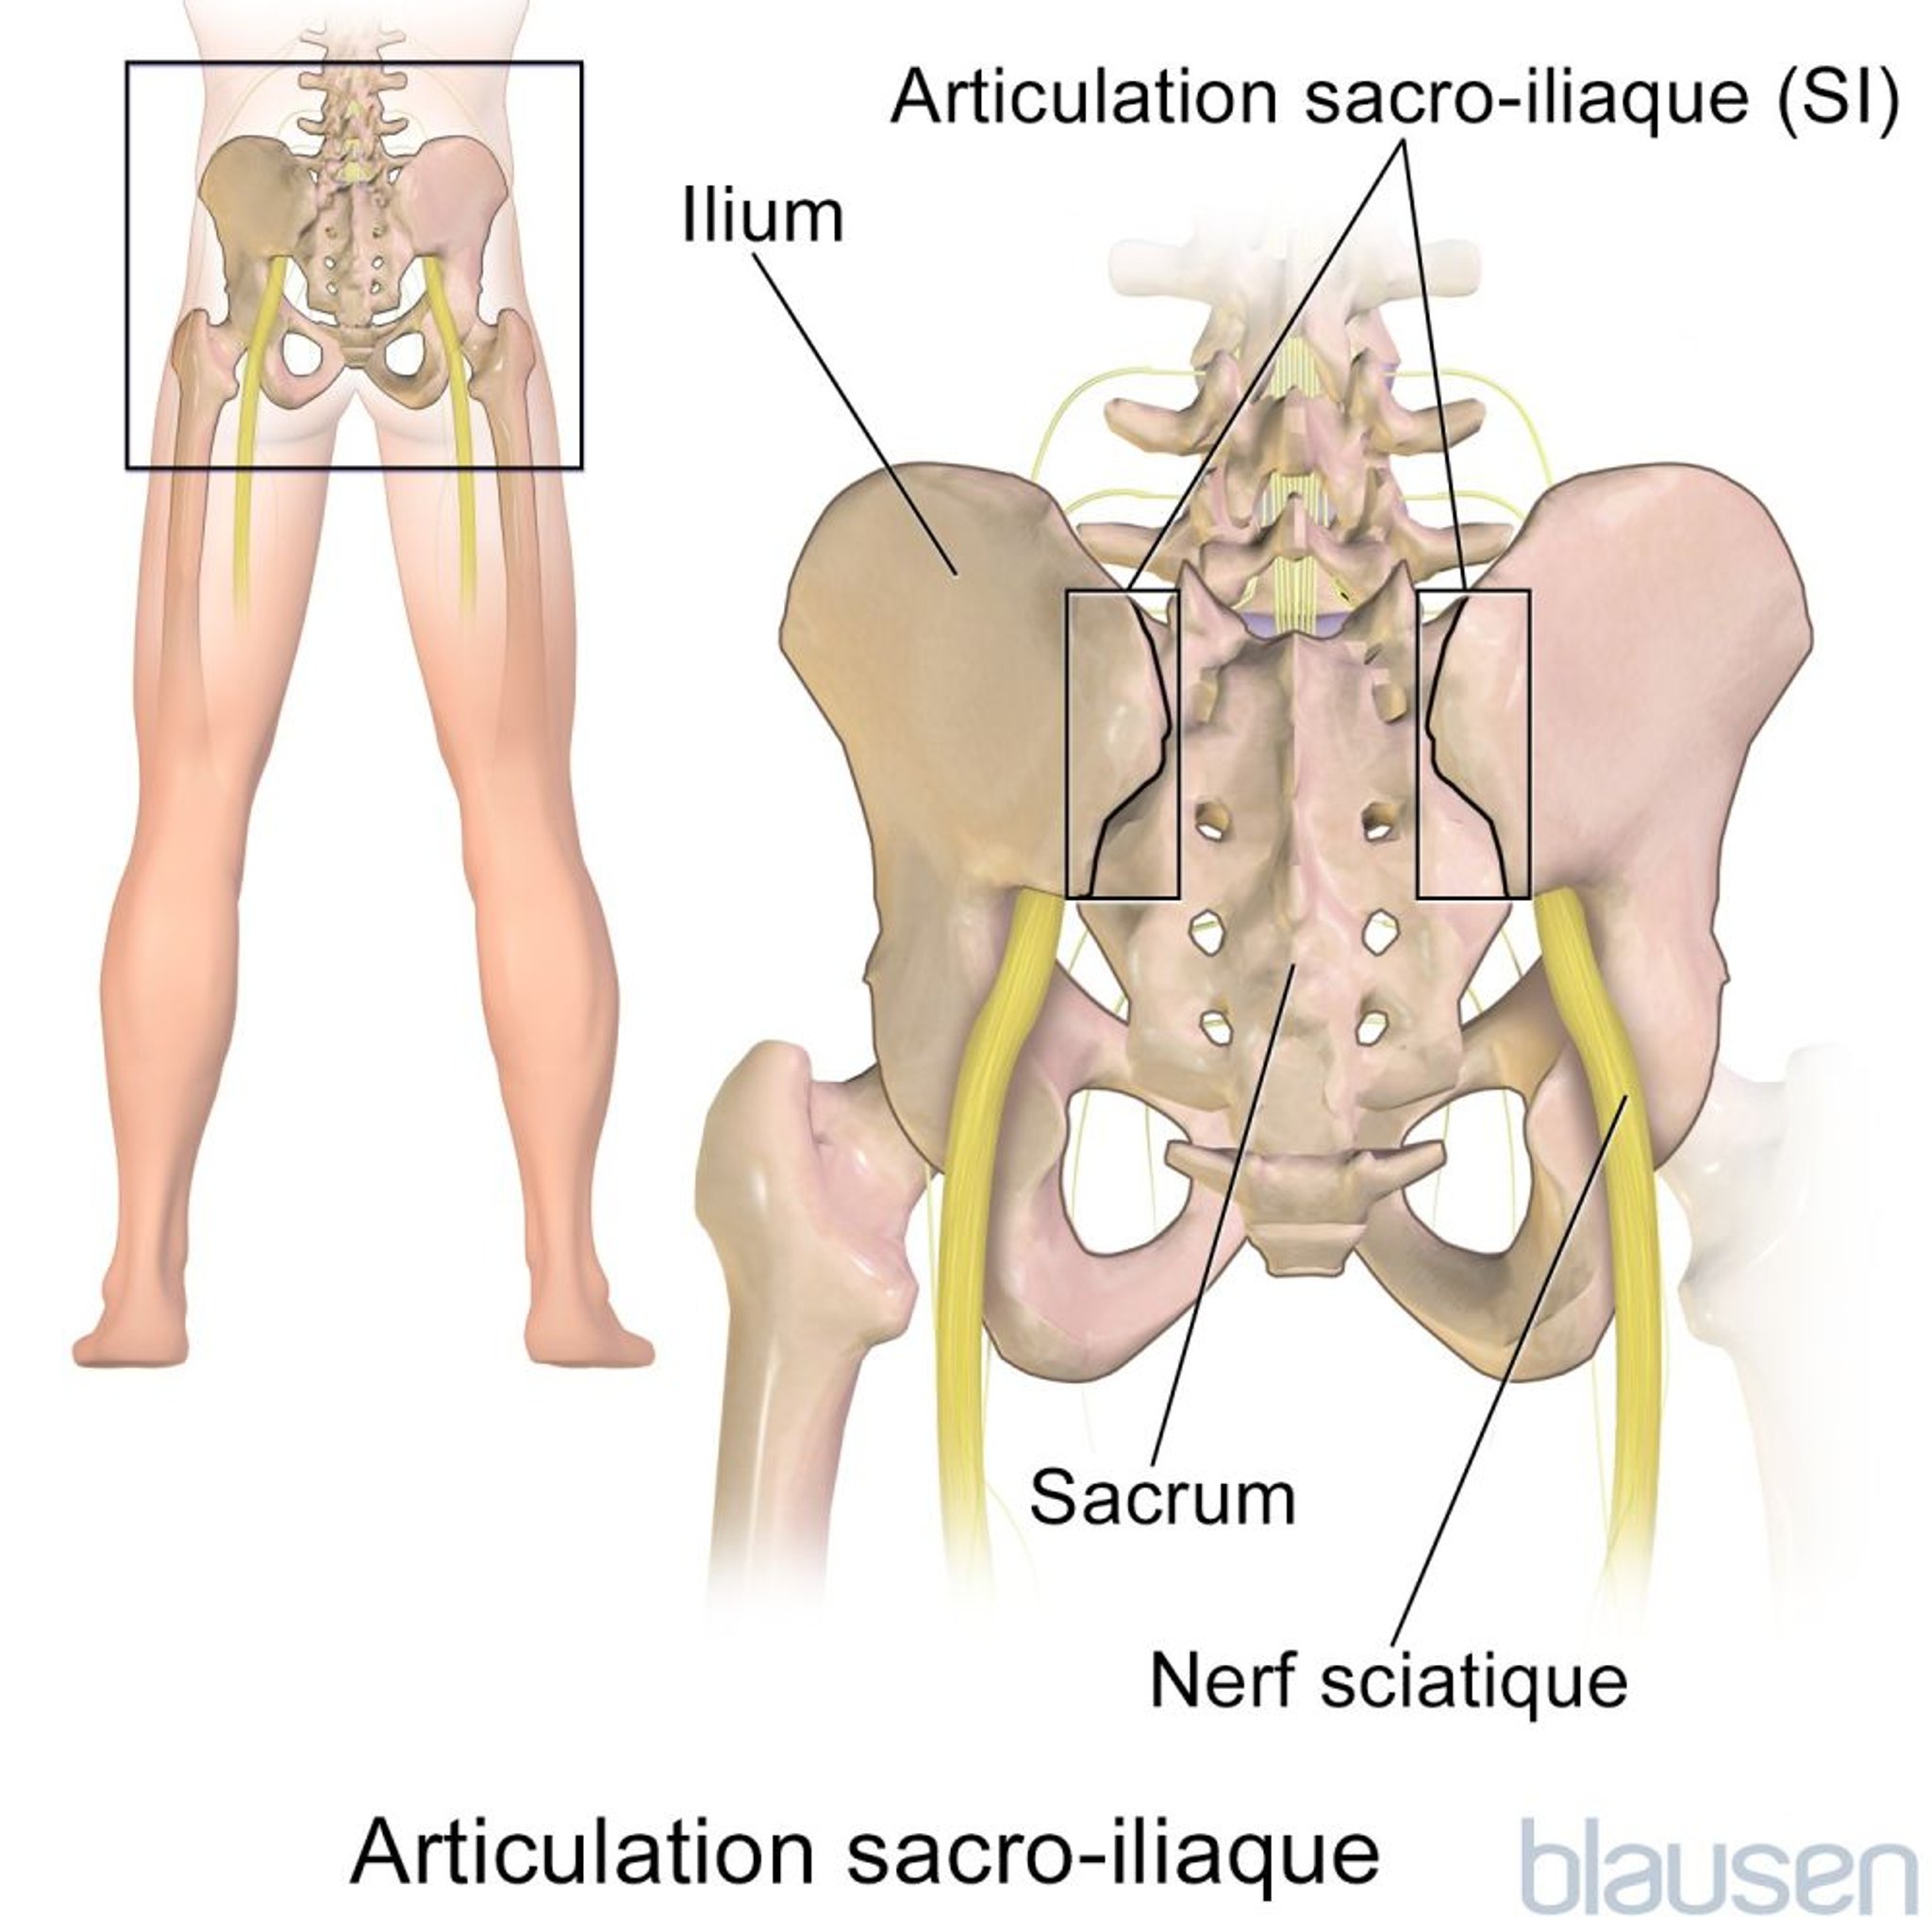 Articulation sacro-iliaque